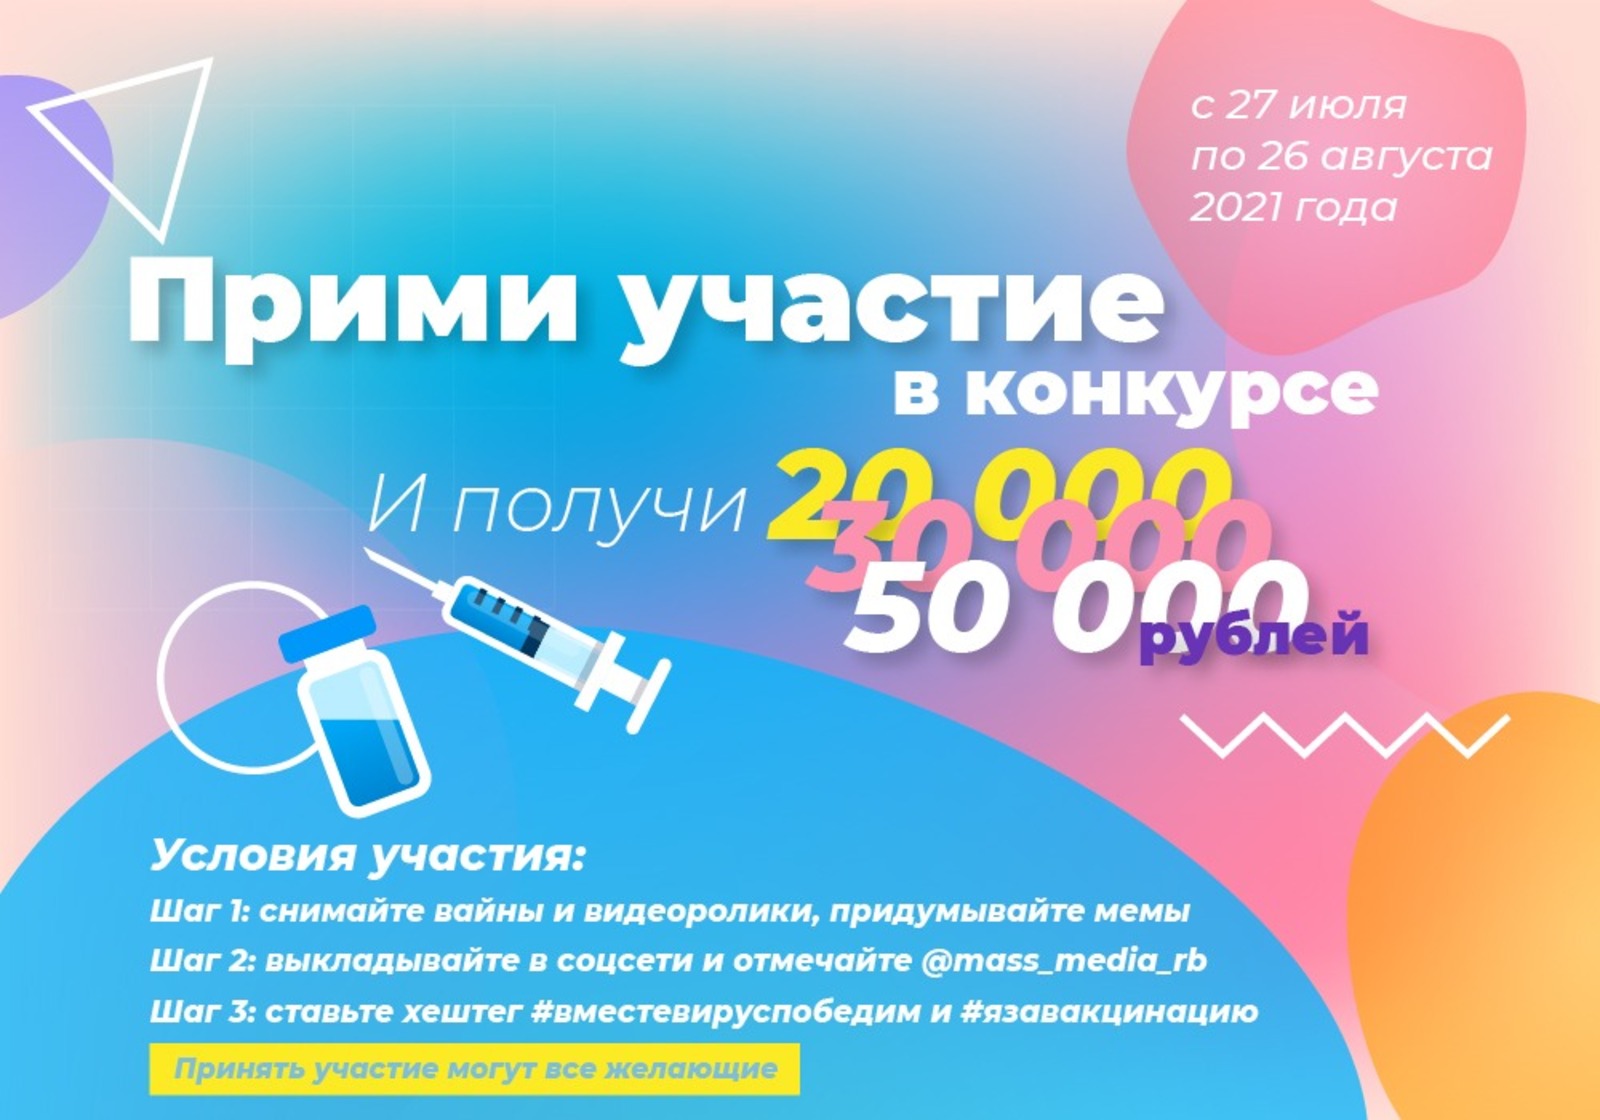 Прими участие в конкурсе видеороликов и выиграй 50 000 рублей